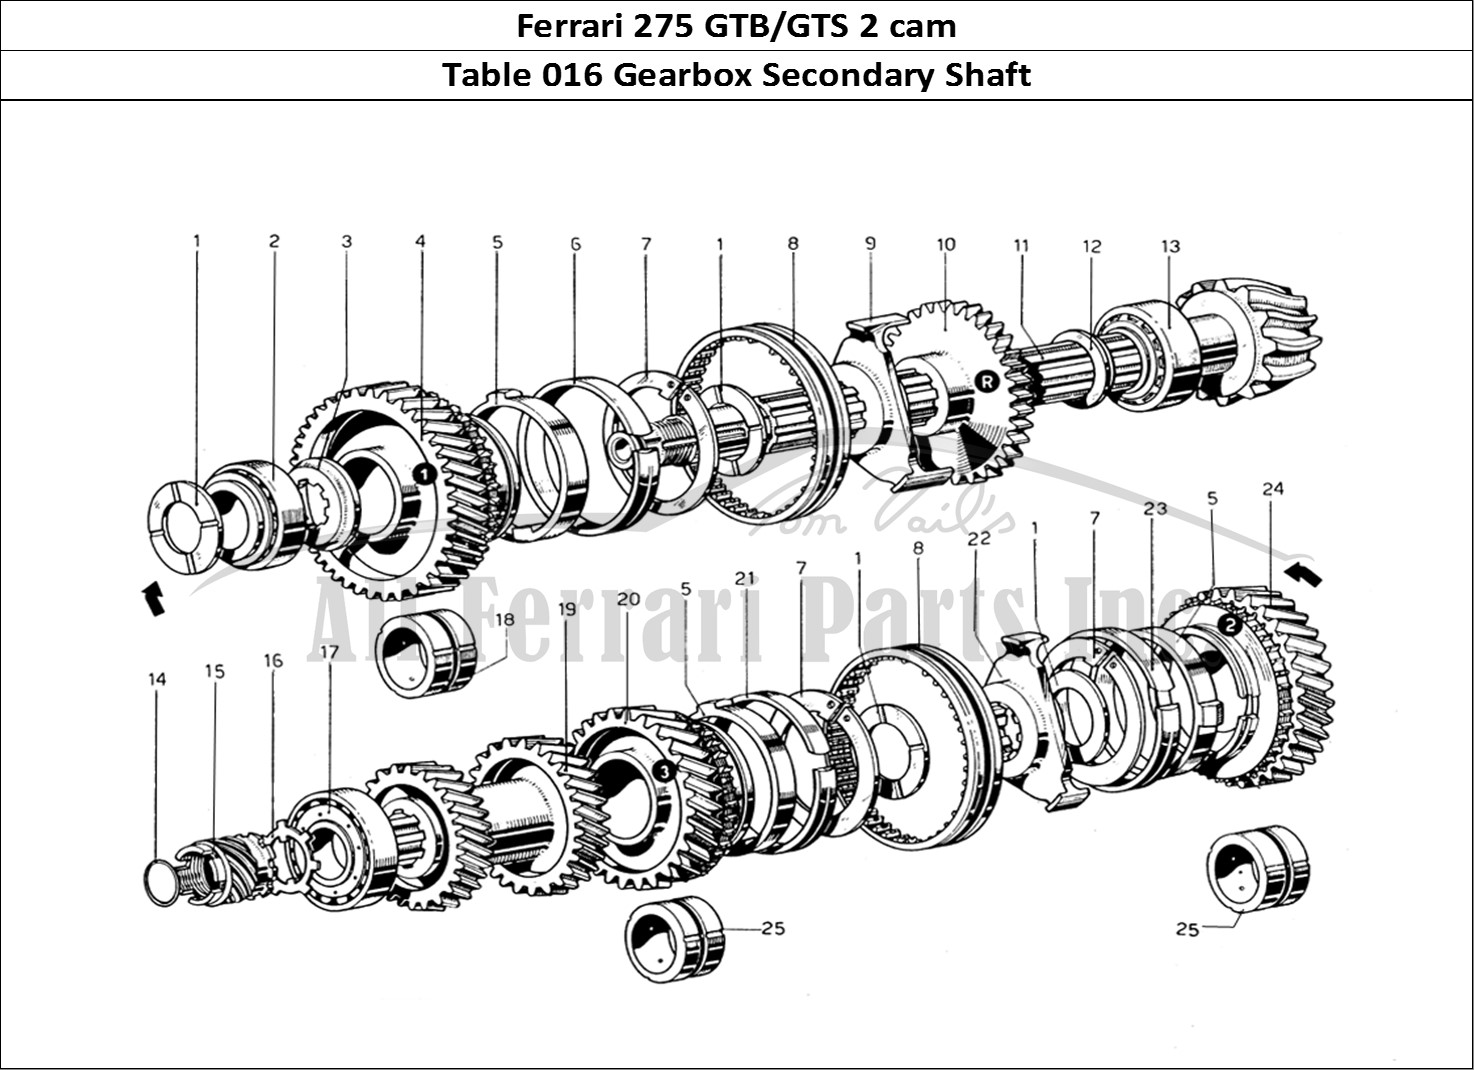 Ferrari Parts Ferrari 275 GTB/GTS 2 cam Page 016 Secondary Shaft